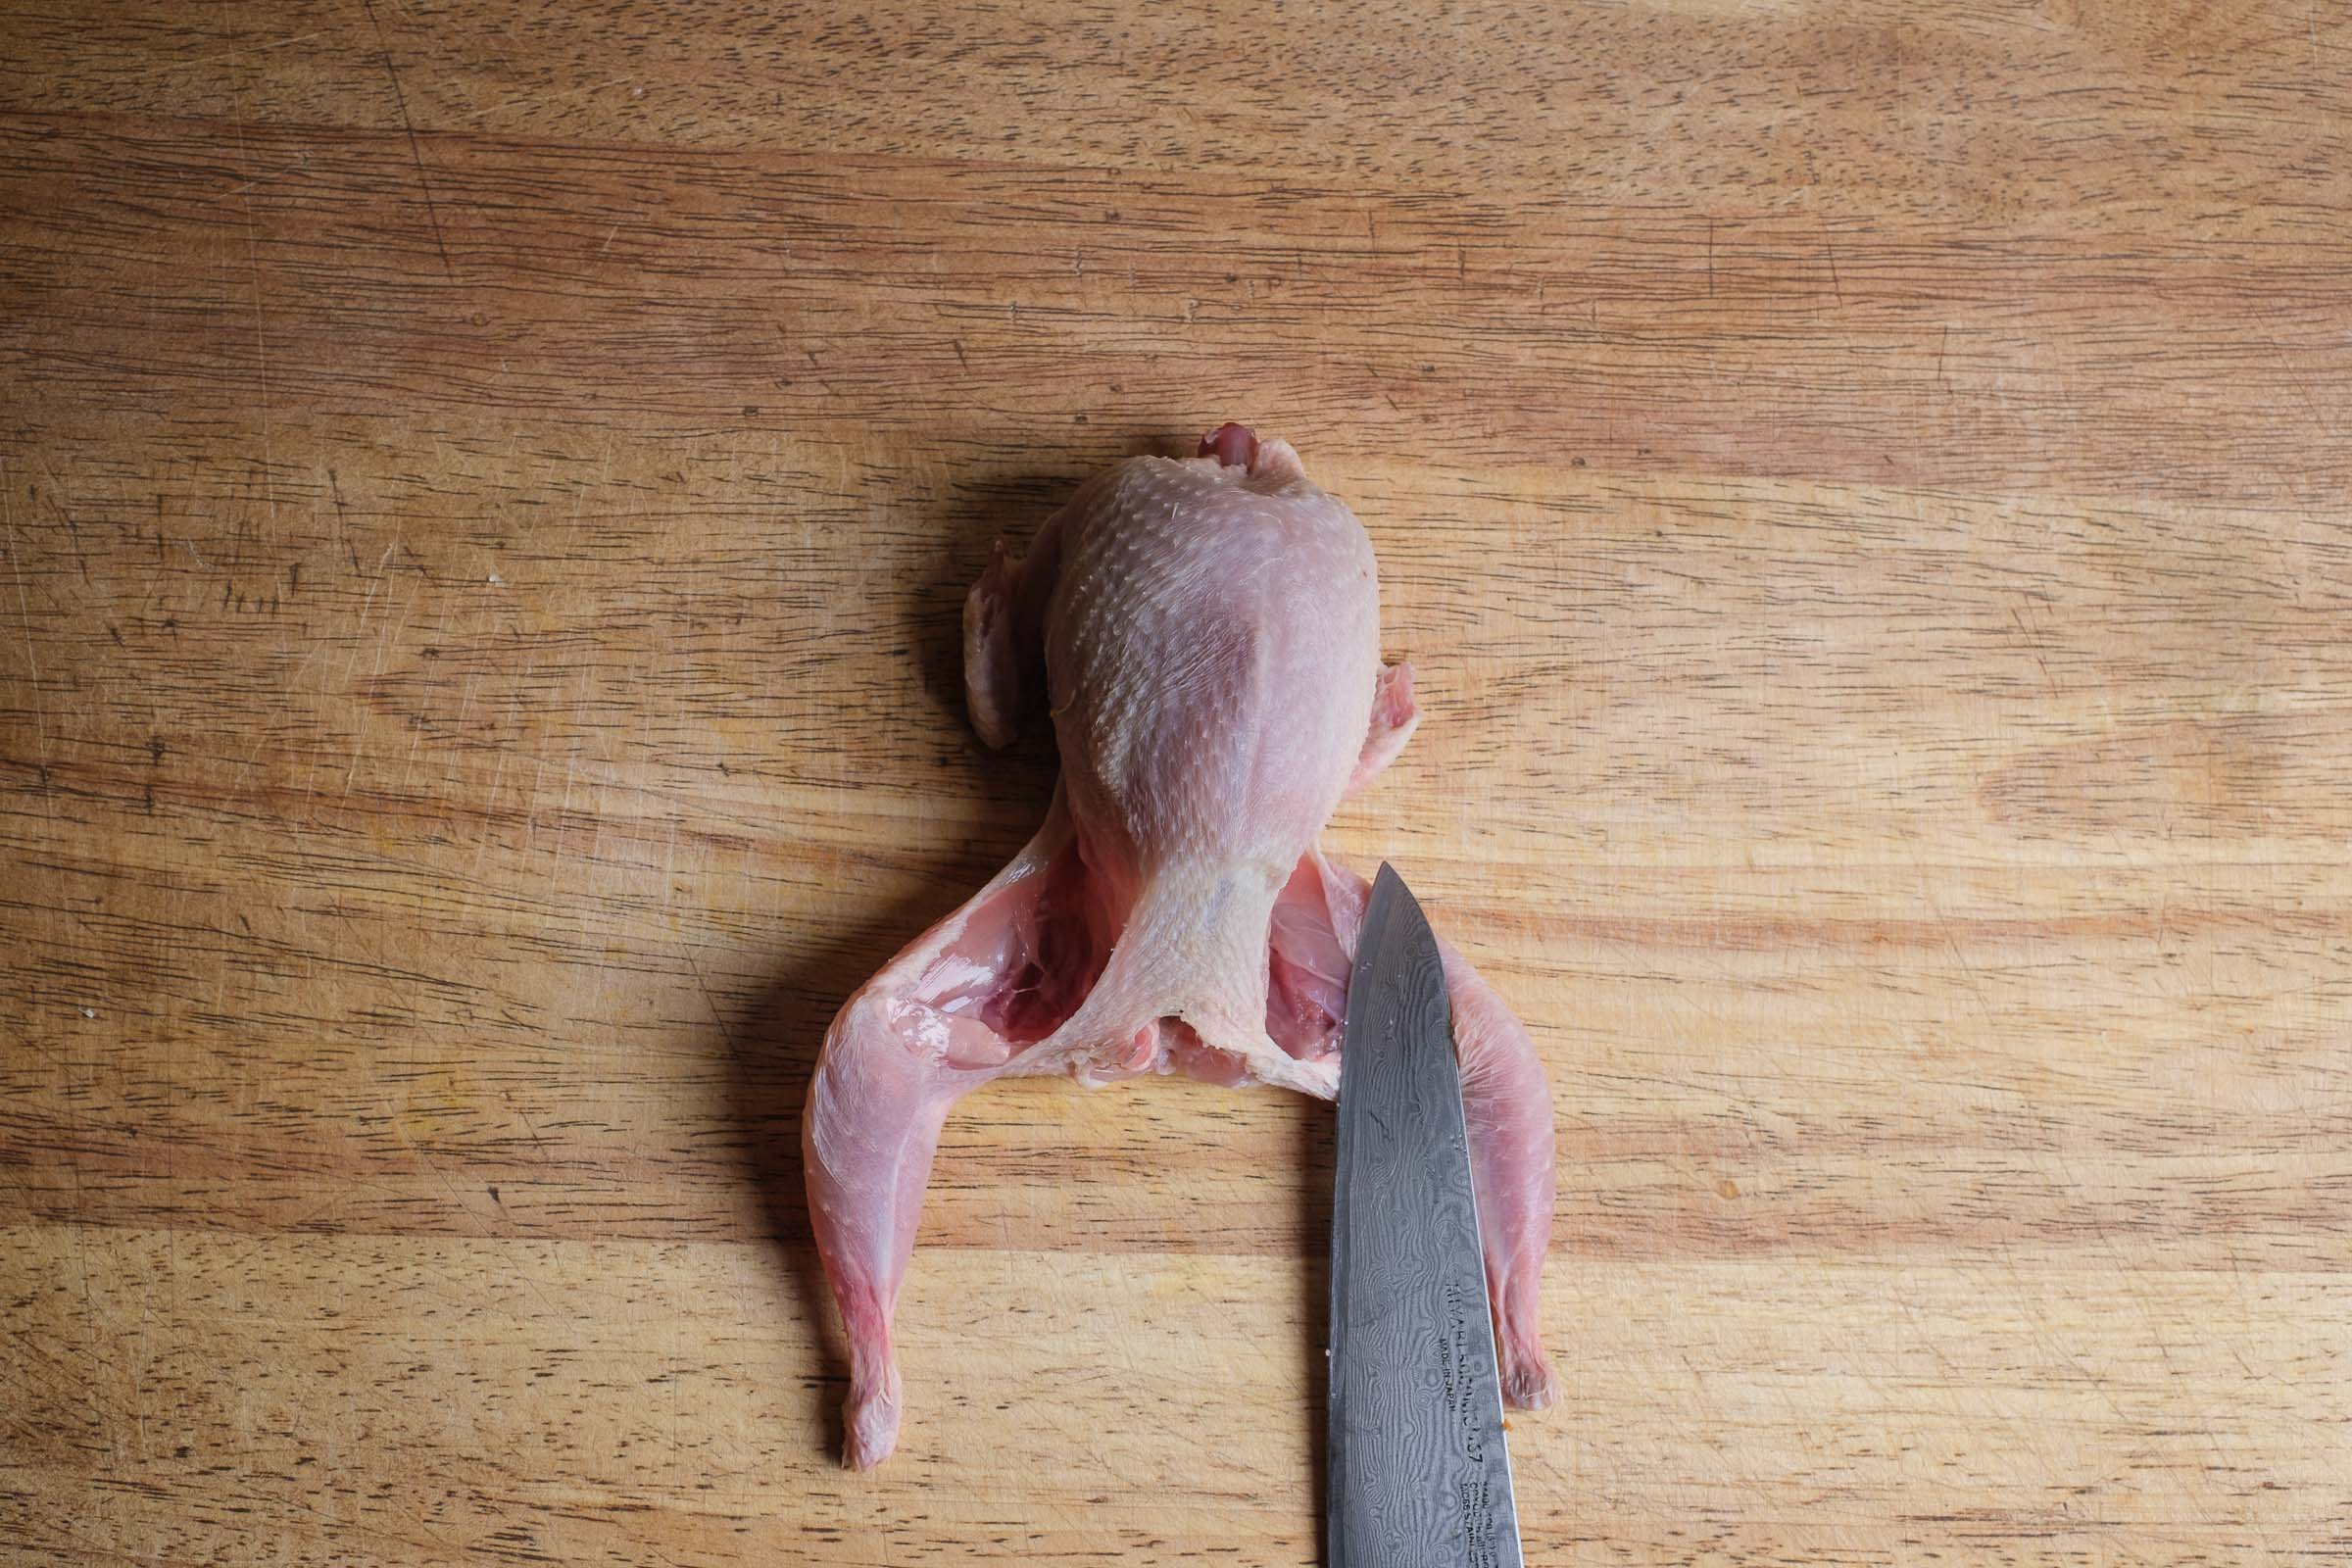 Cut the quail legs